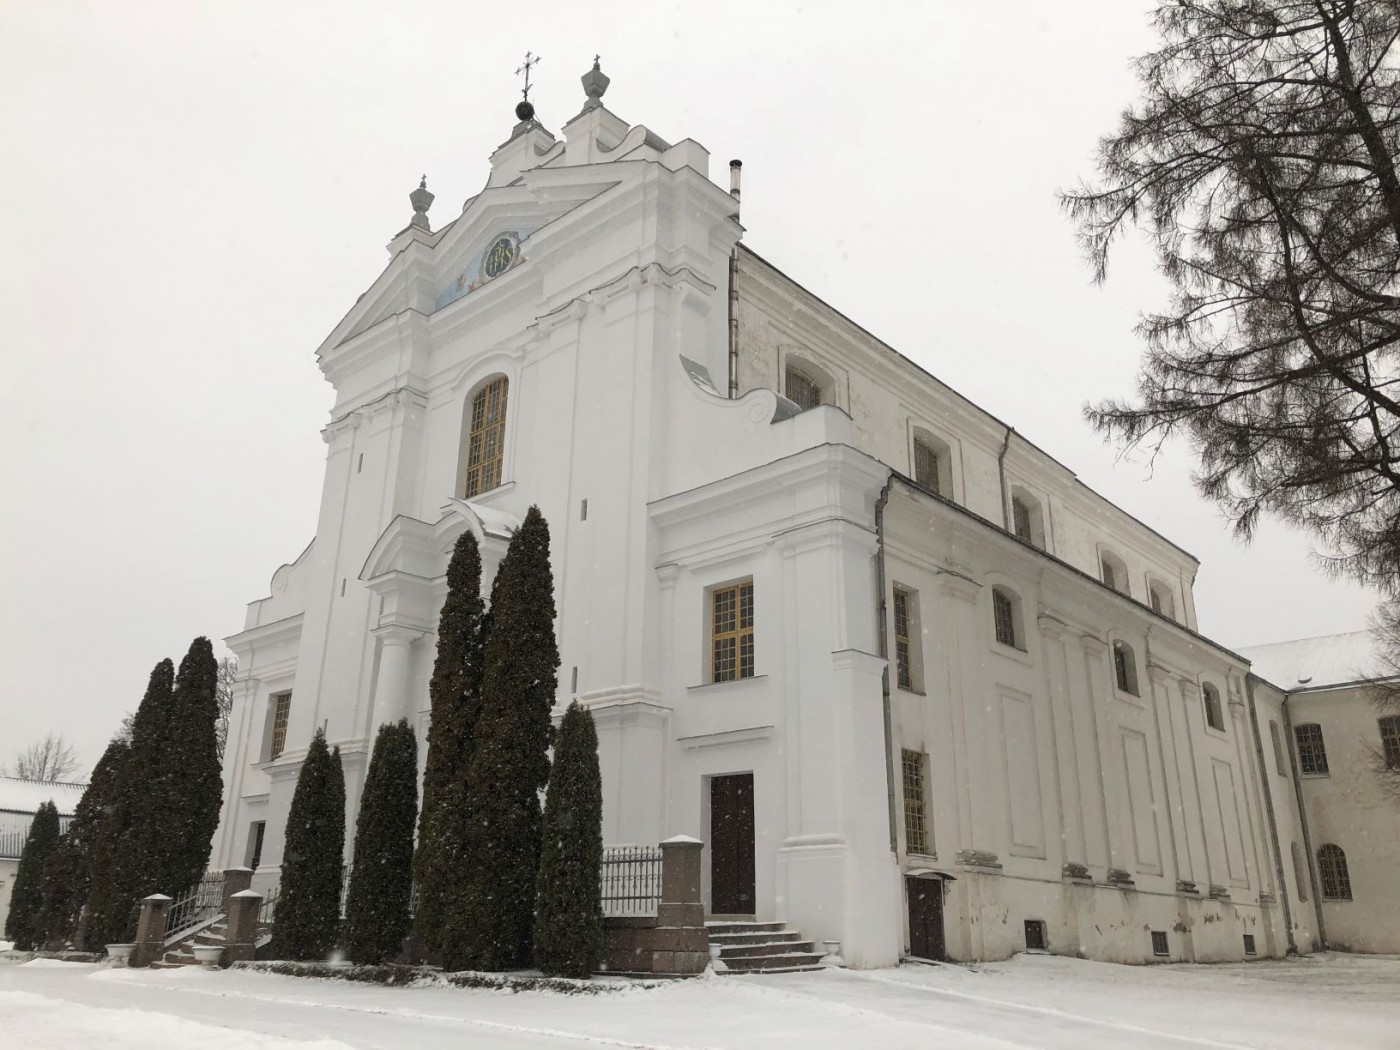 St. Louis Church in Kraslav